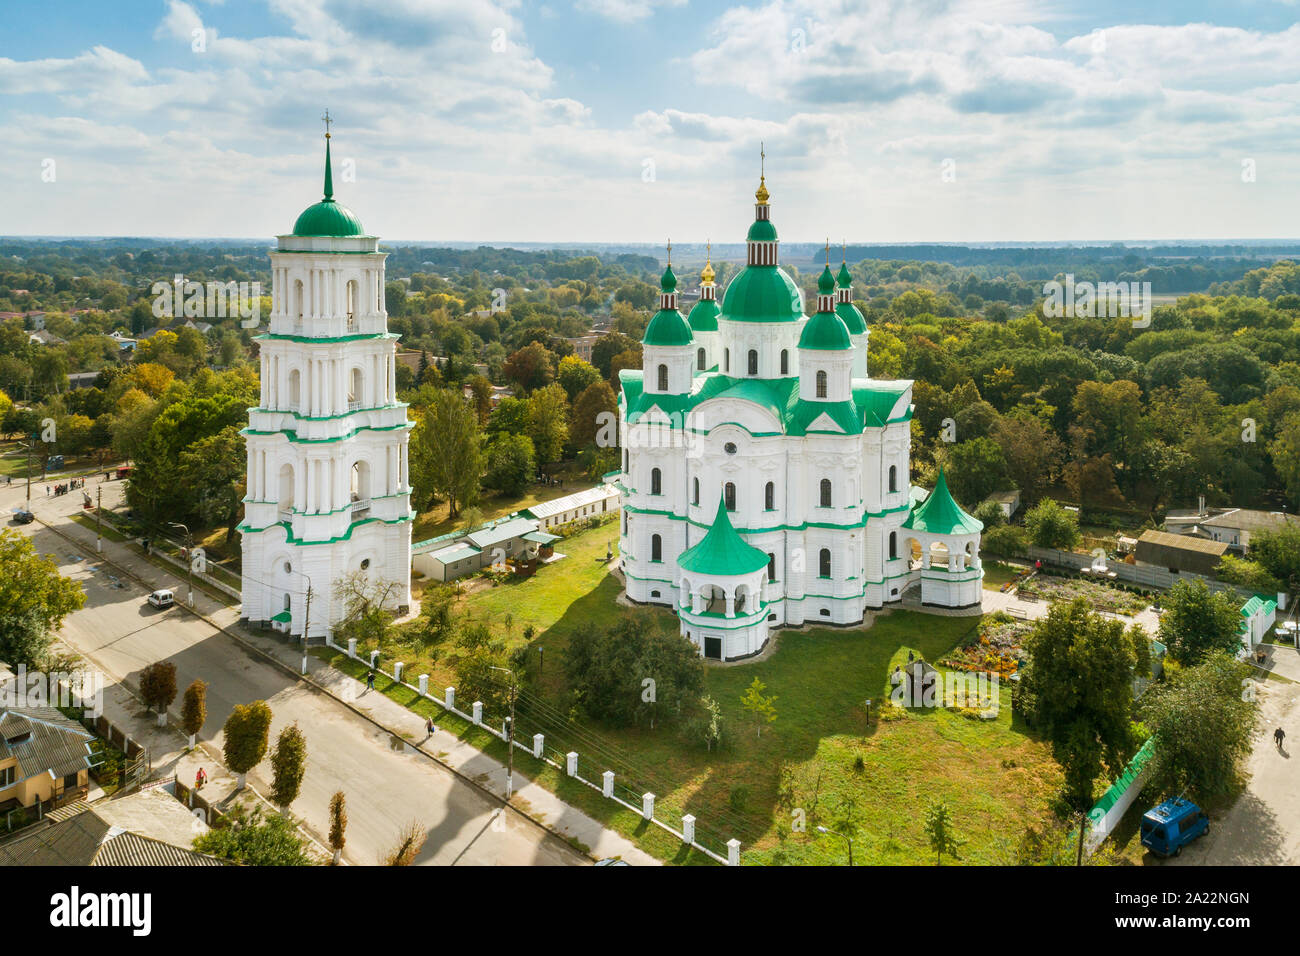 Luftaufnahme von Dom von der Geburt der Heiligen Mutter Gottes in Tschernigow Kozelets Stadt, Region, in der Ukraine. Kathedrale gebaut in der ukrainischen Ba Stockfoto